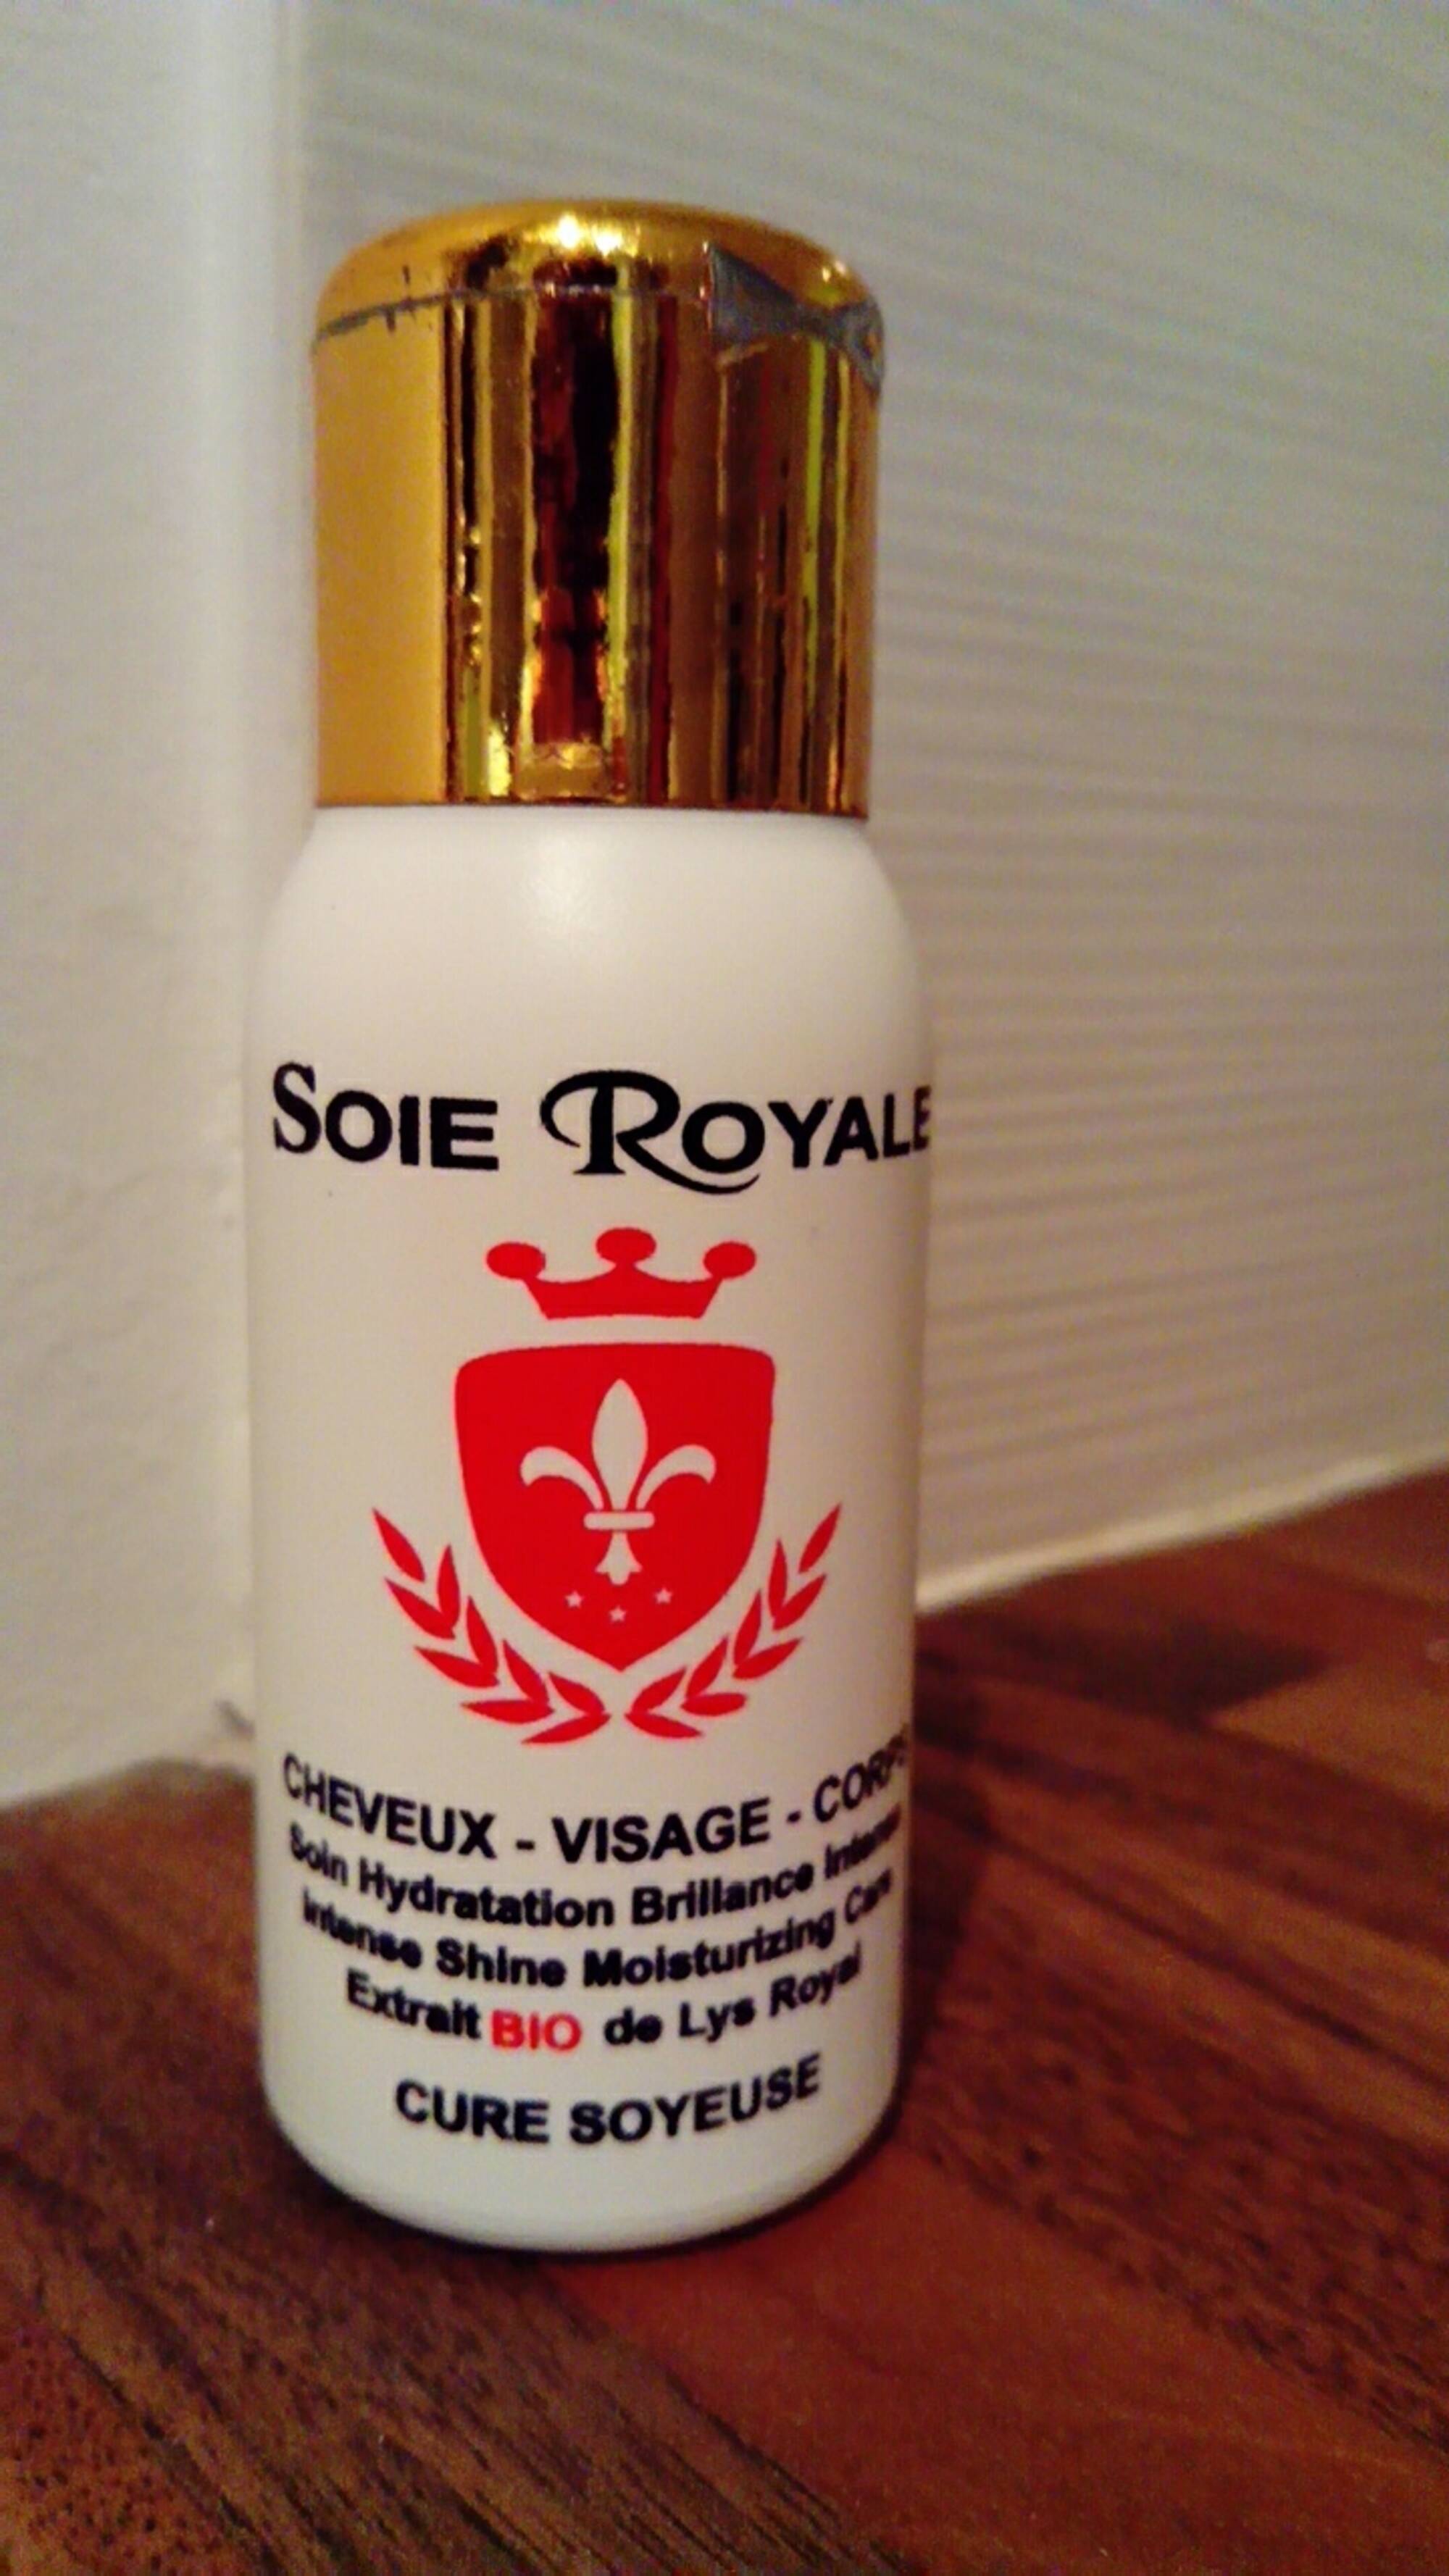 SOIE ROYALE CURE SOYEUSE - Soie Royale BIO Cure Soyeuse 66 ml